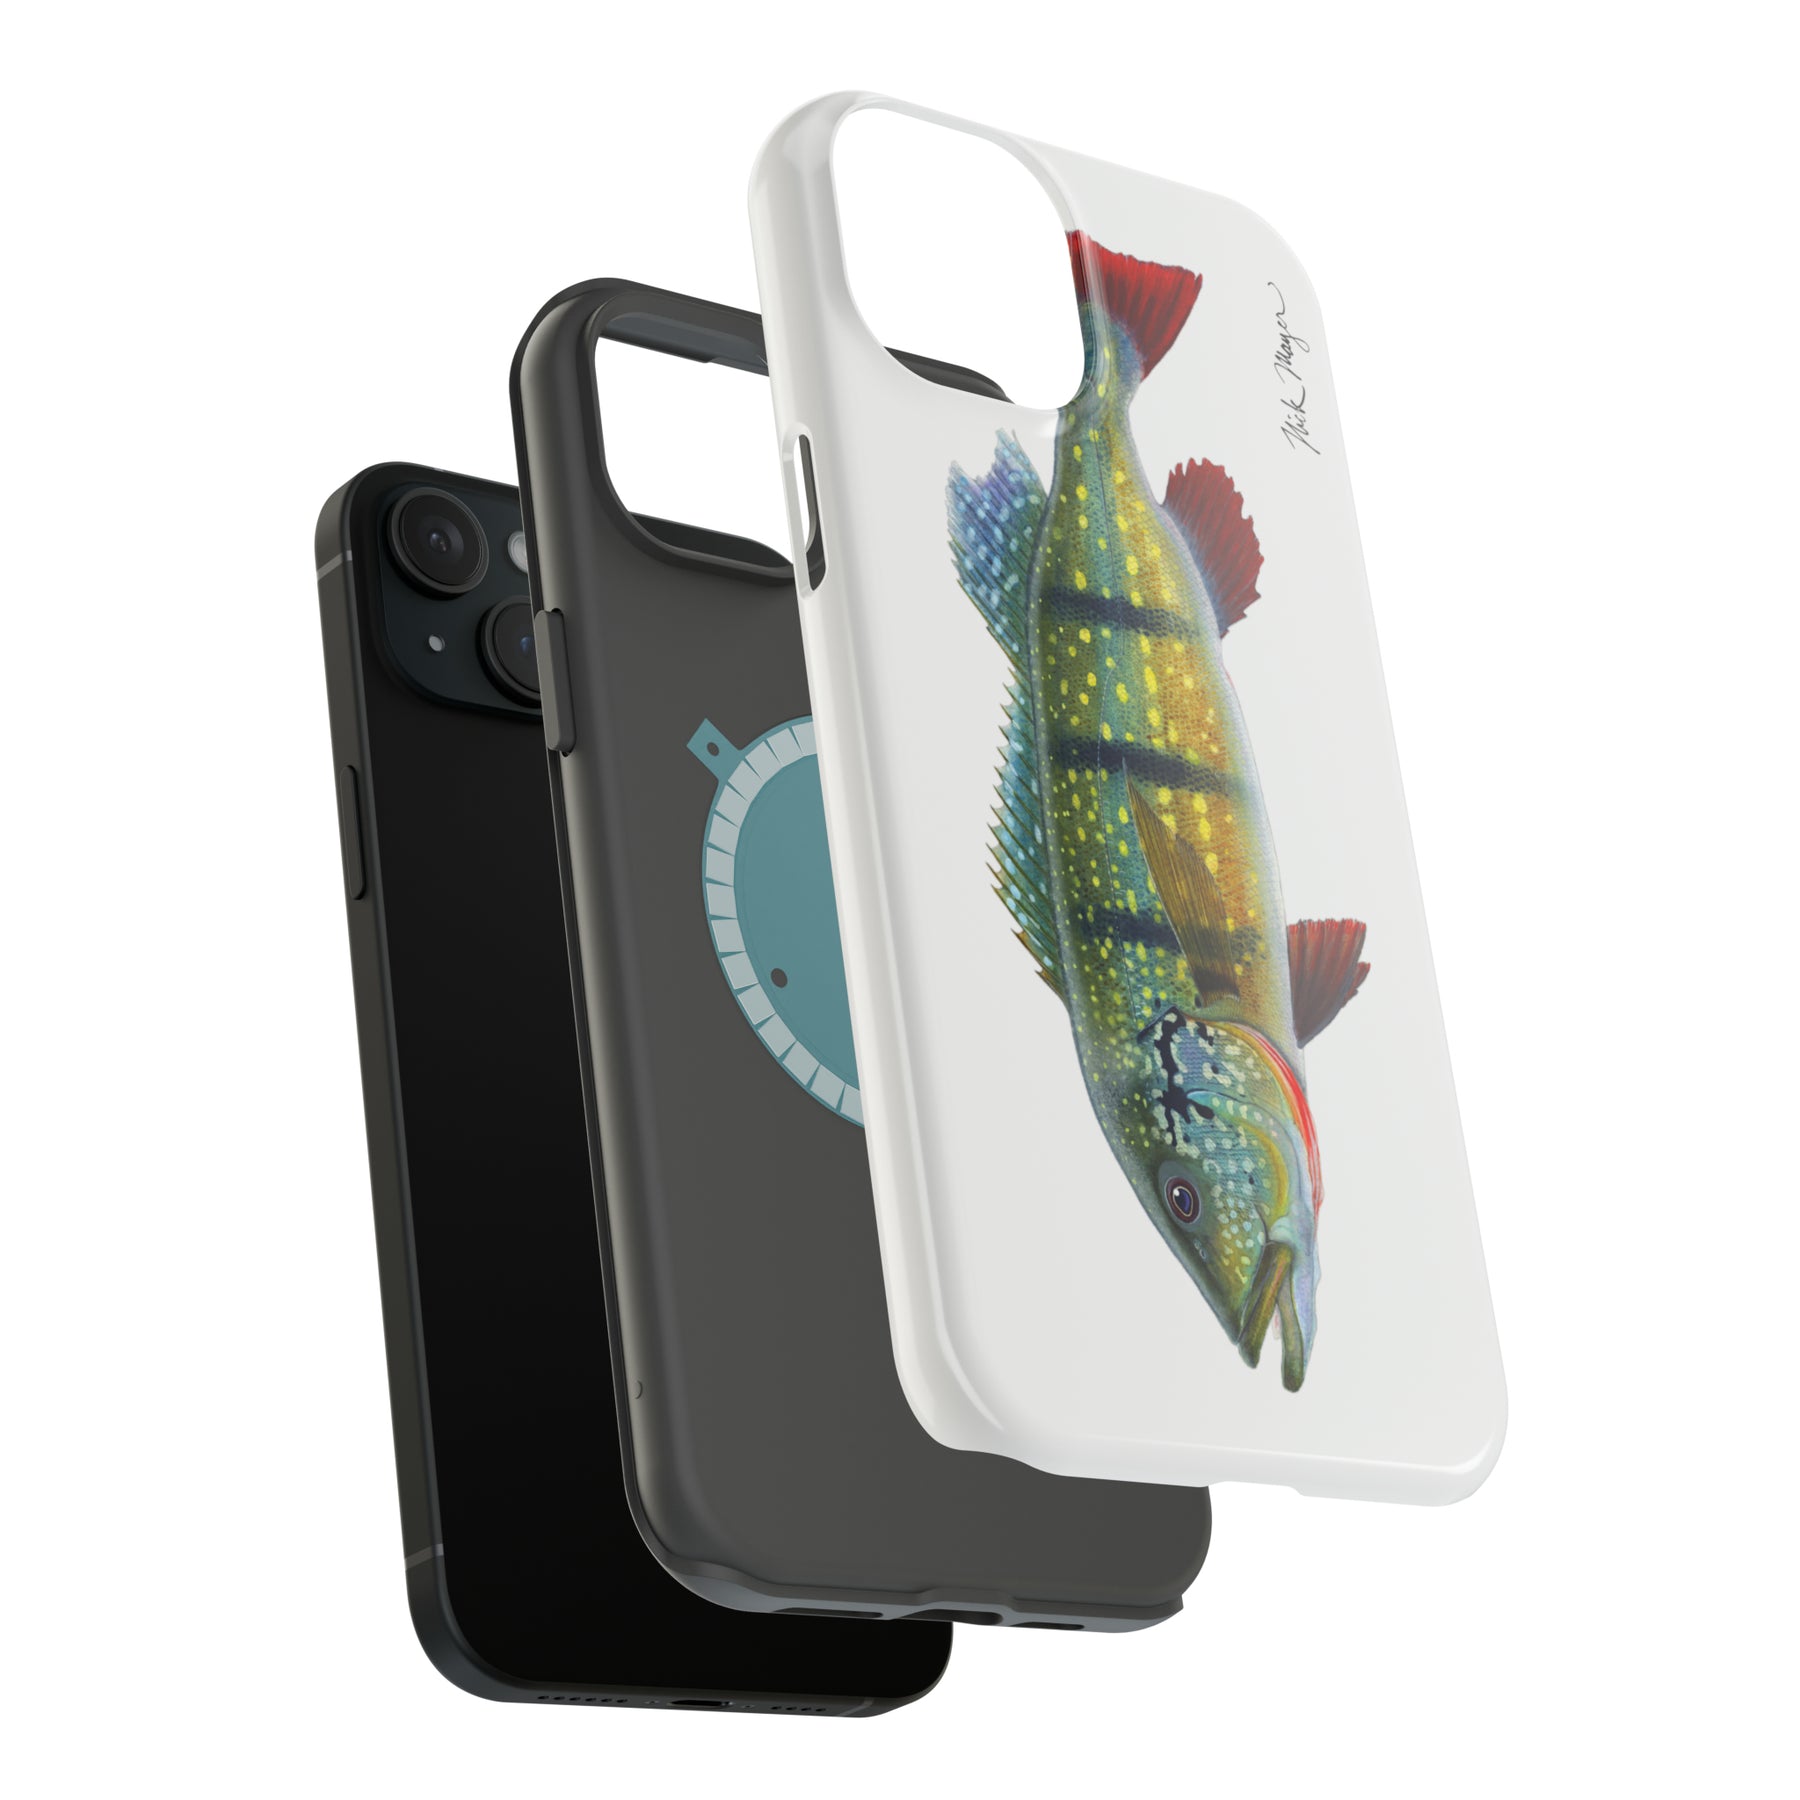 Peacock Bass MagSafe iPhone Case